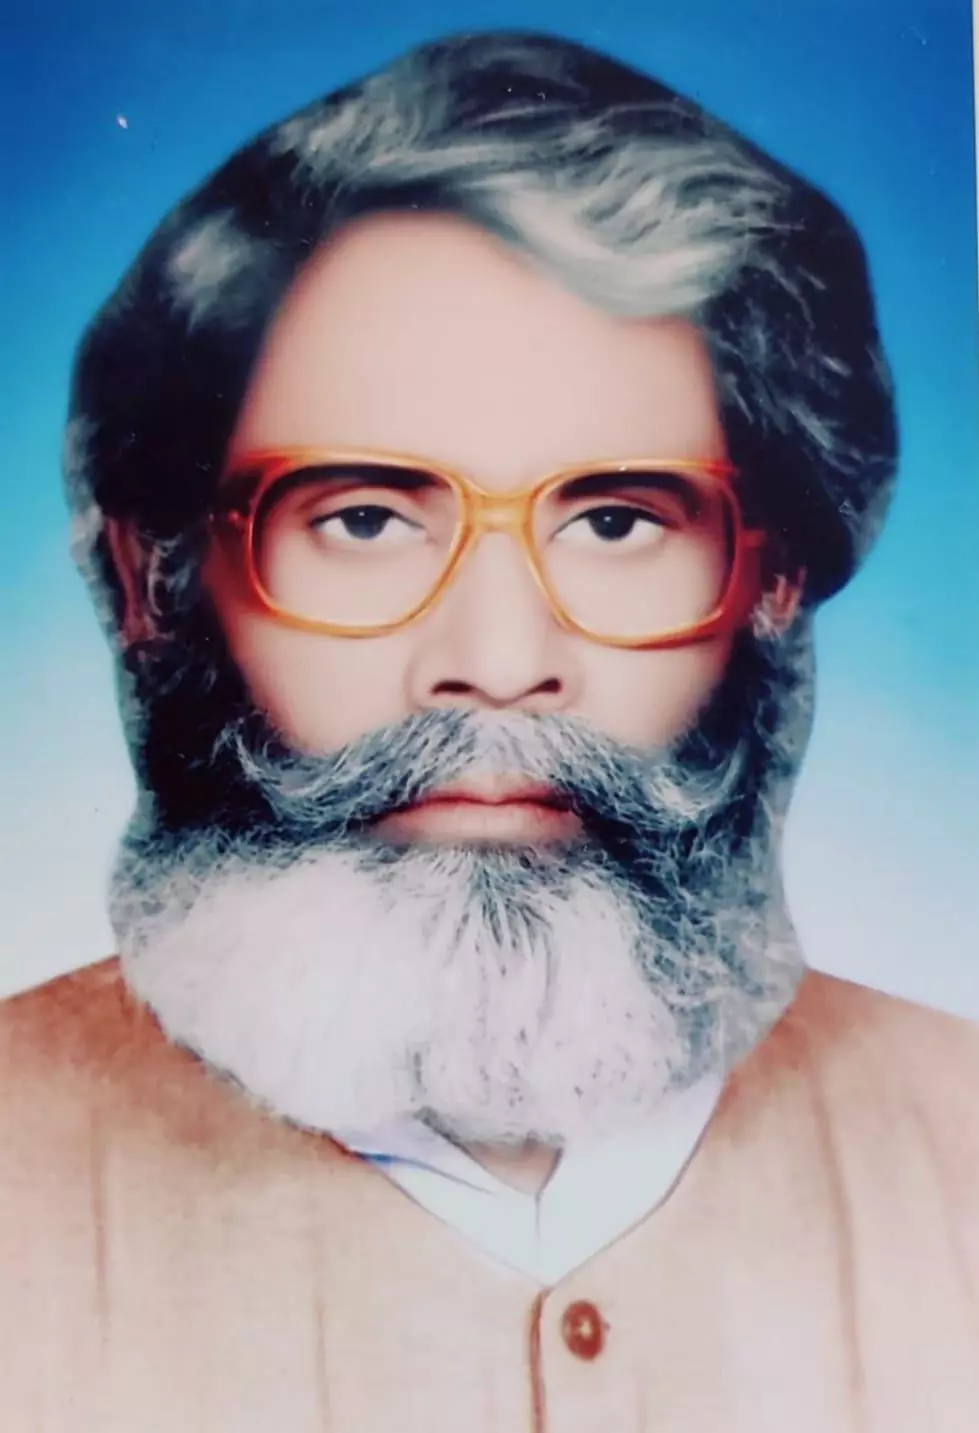 लोकप्रिय मजदूर नेता और कवि मनोज भावुक के पिता रामदेव सिंह के निधन से मजदूरों में शोक